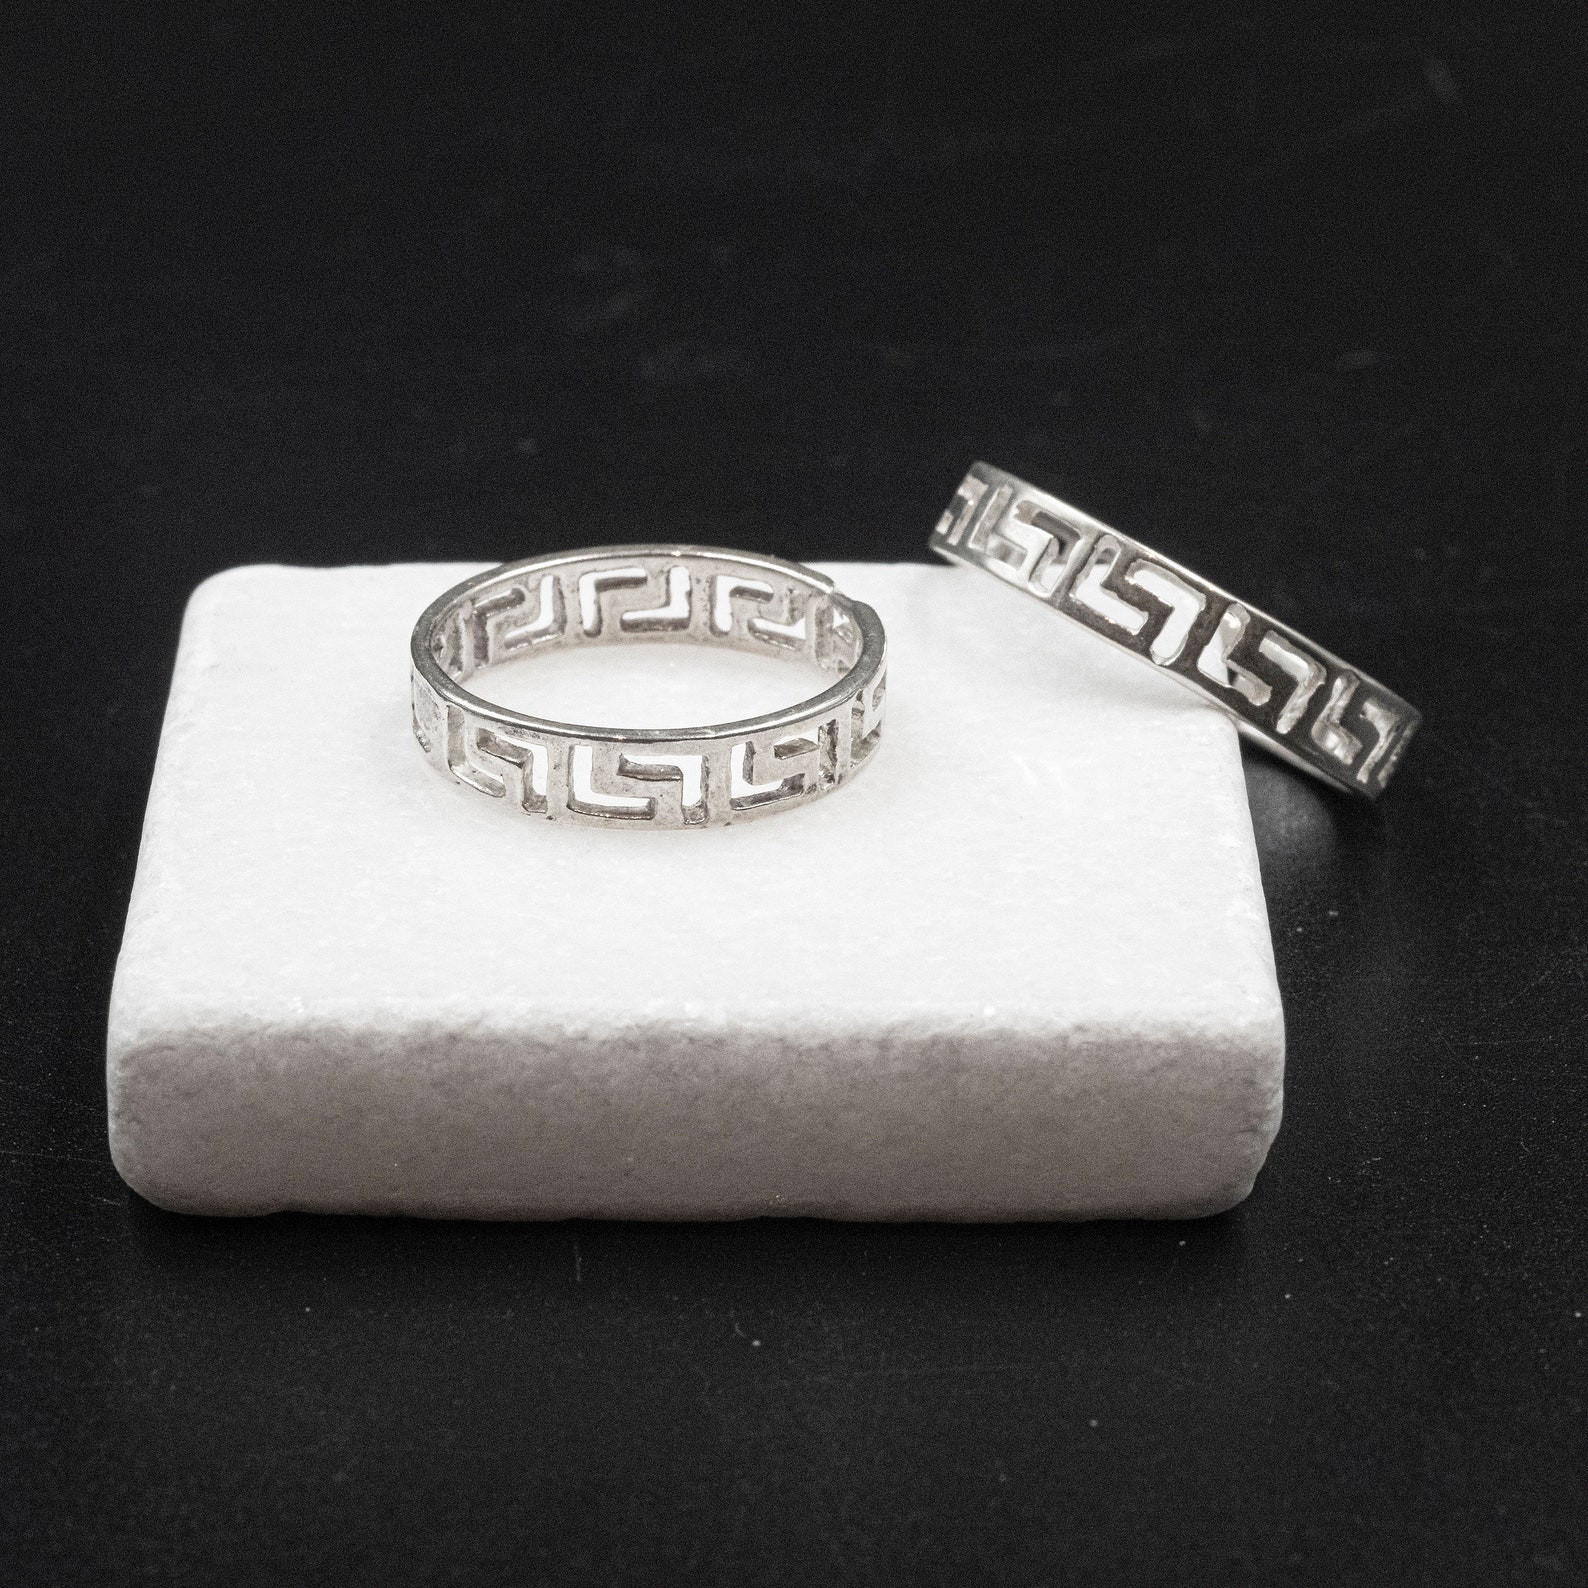 Greek Key Sterling Silver Ring Greek Wedding Band Cut Out | Etsy